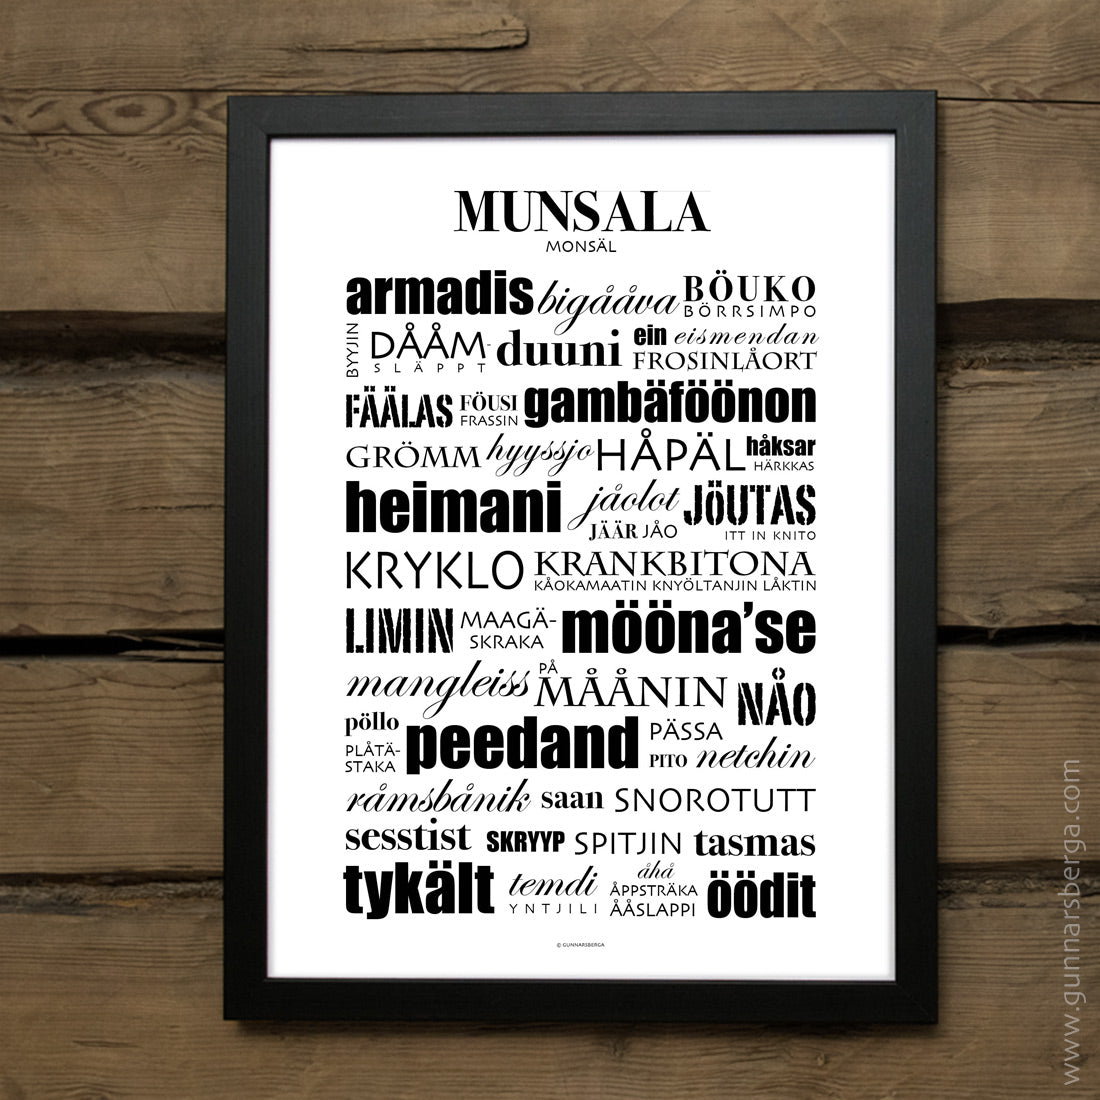 Munsala dialekttavla från Gunnarsberga